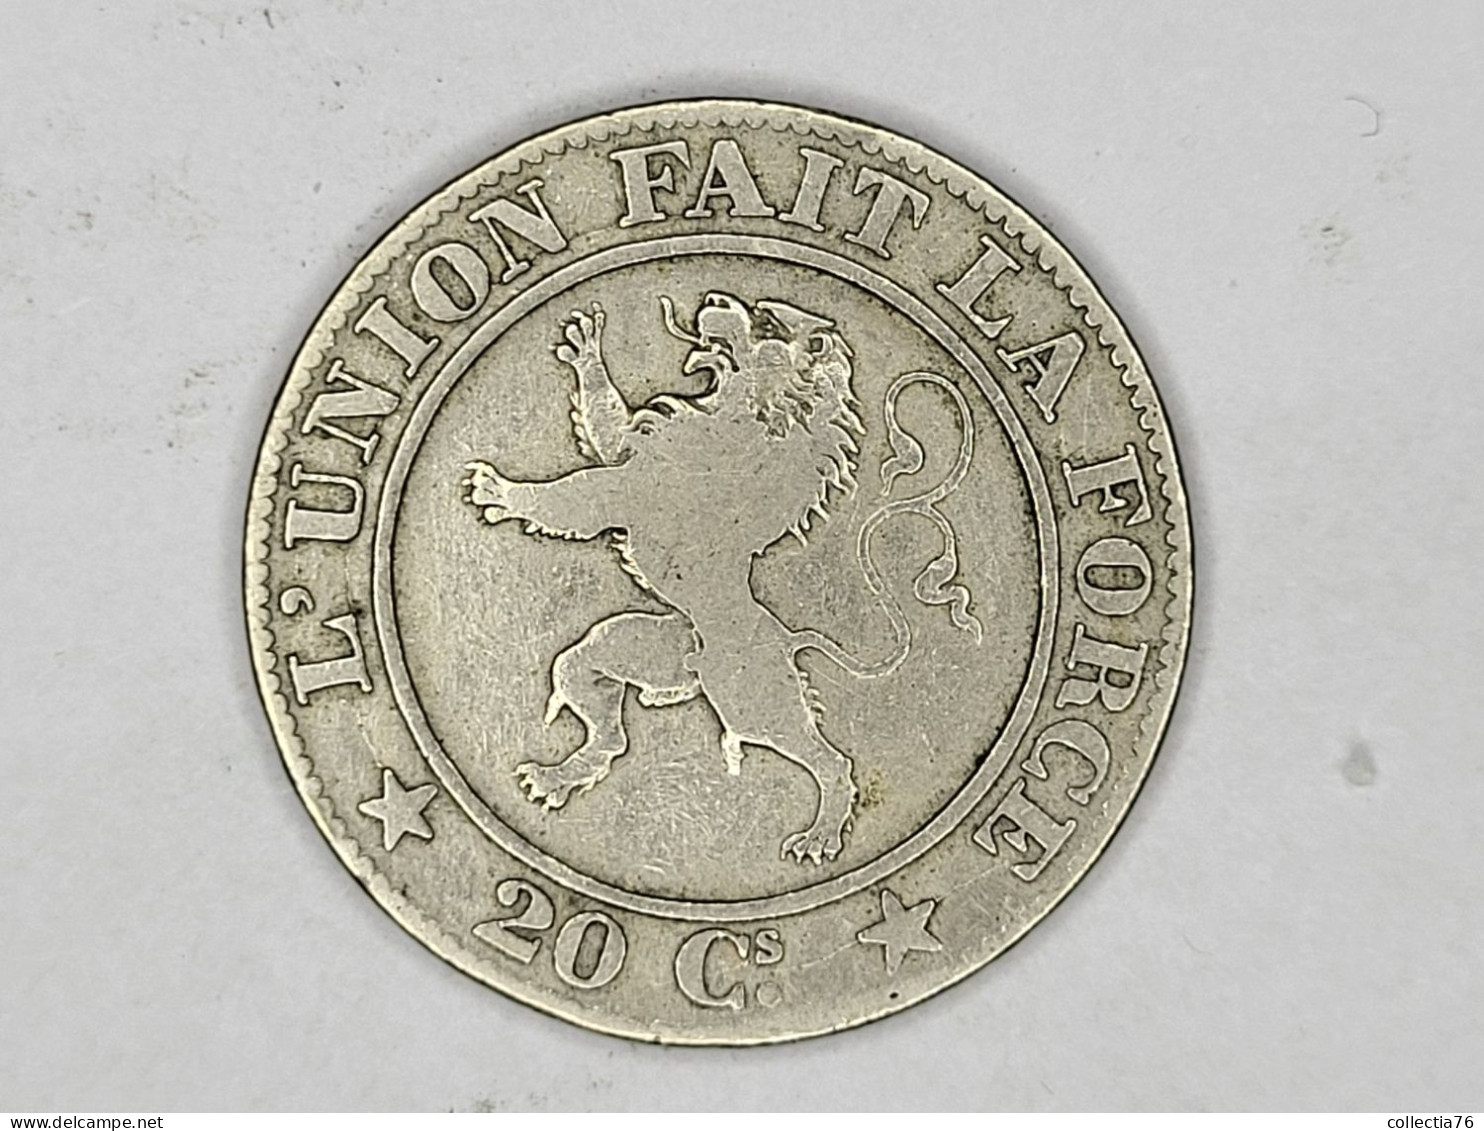 MONNAIE COIN BELGIQUE BELGIE 20 CENTIMES LEOPOLD I 1860 LEGENDE FRANCAISE RARE - 20 Cent